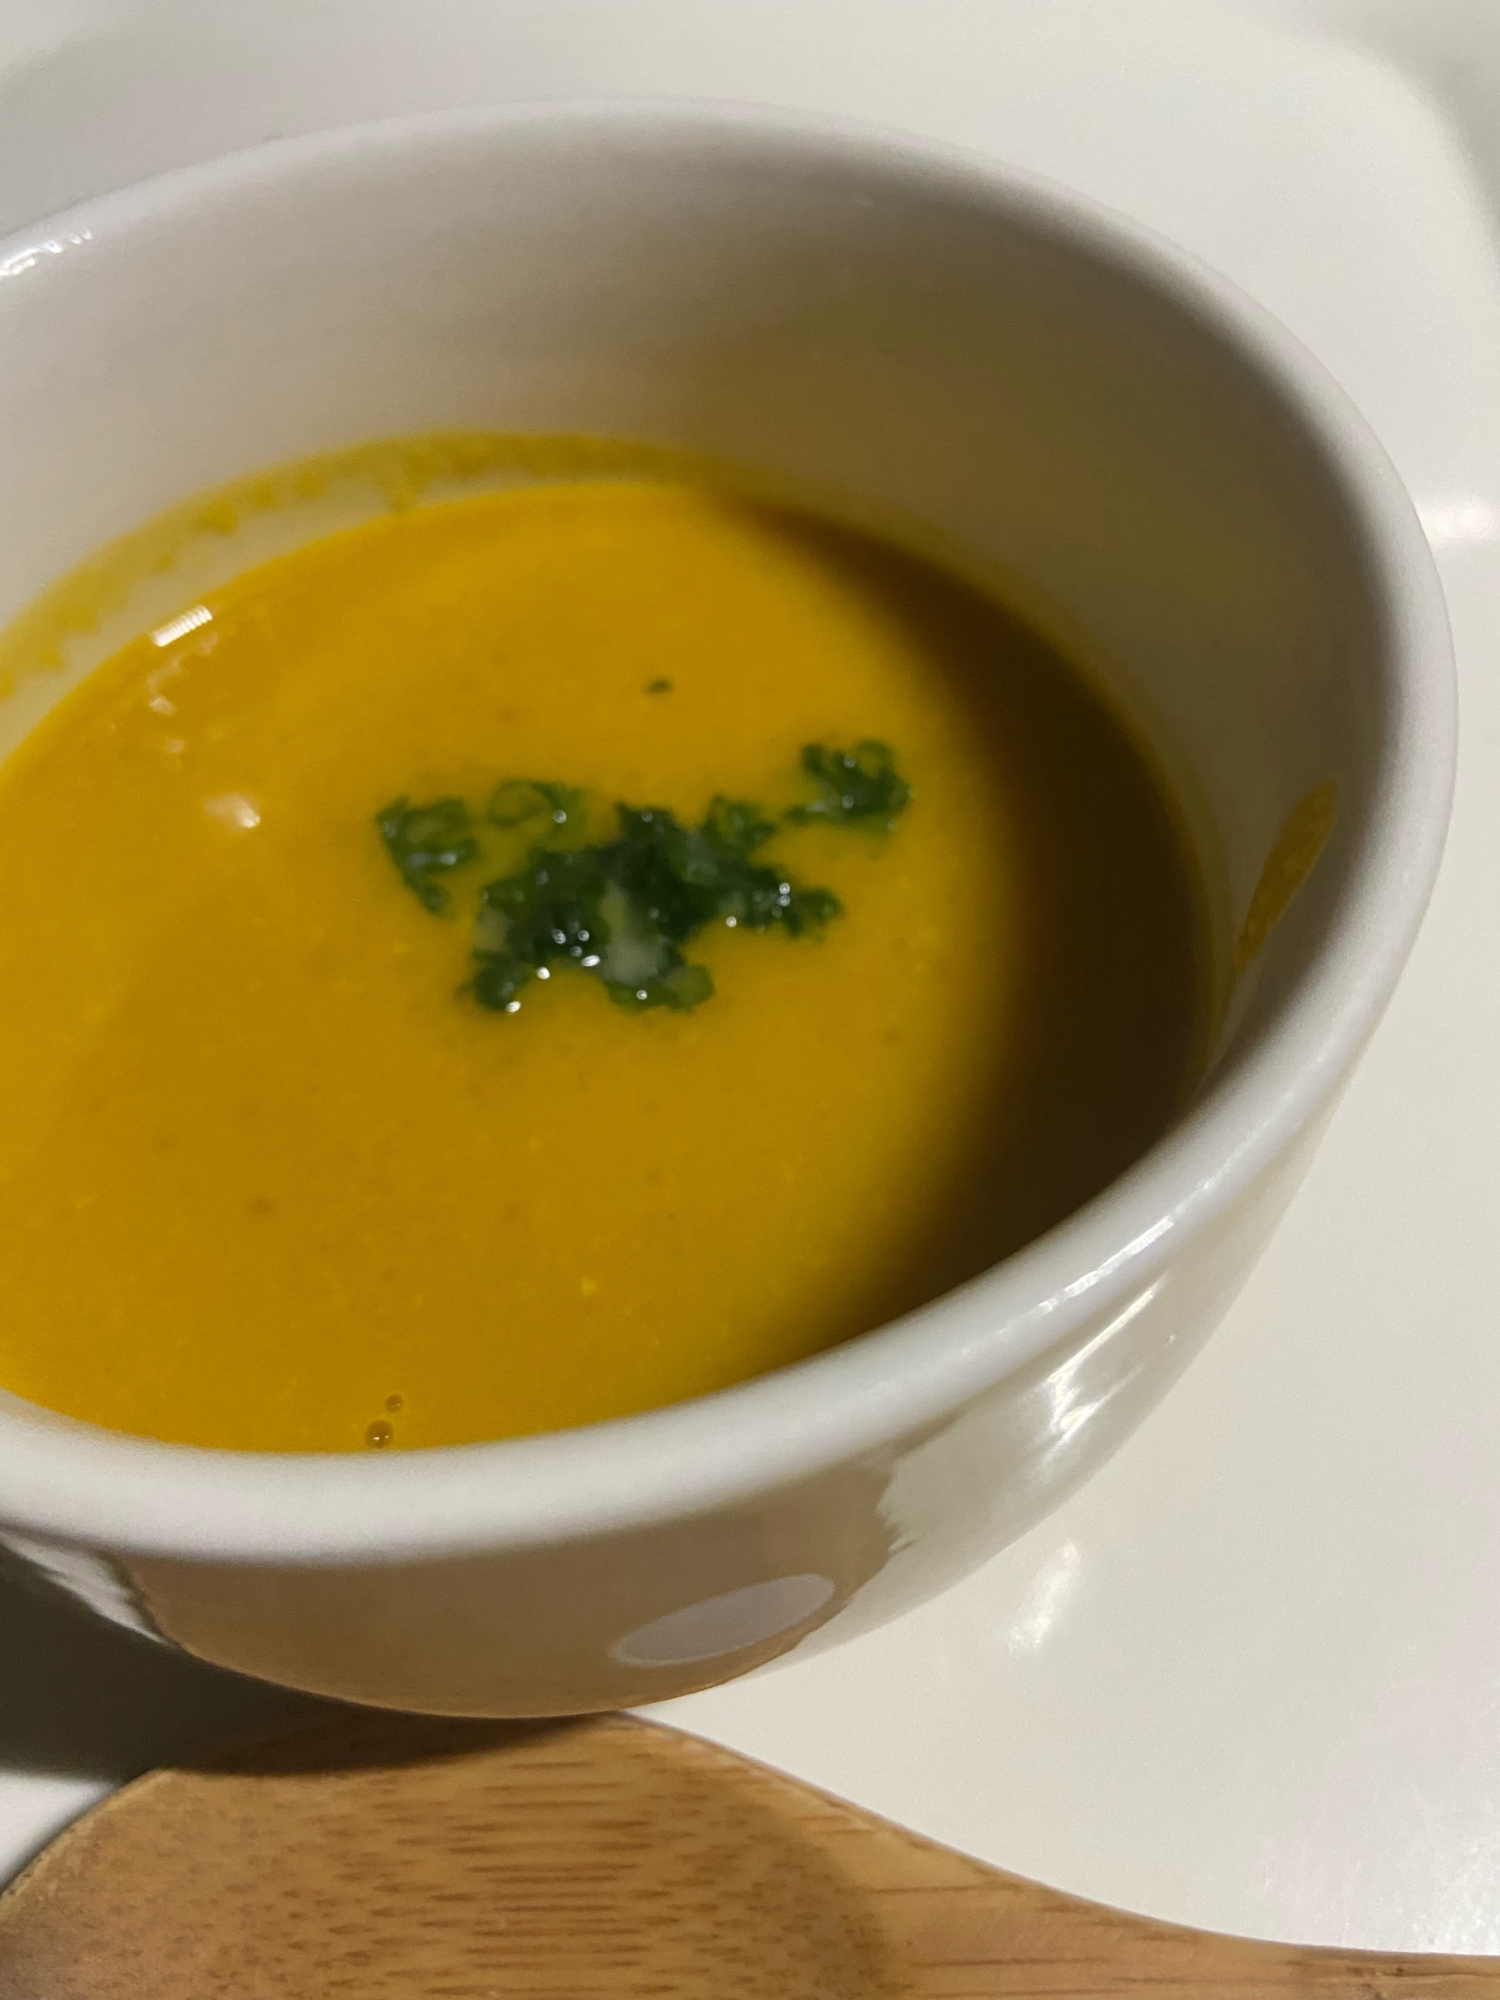 バターナッツかぼちゃの簡単スープ